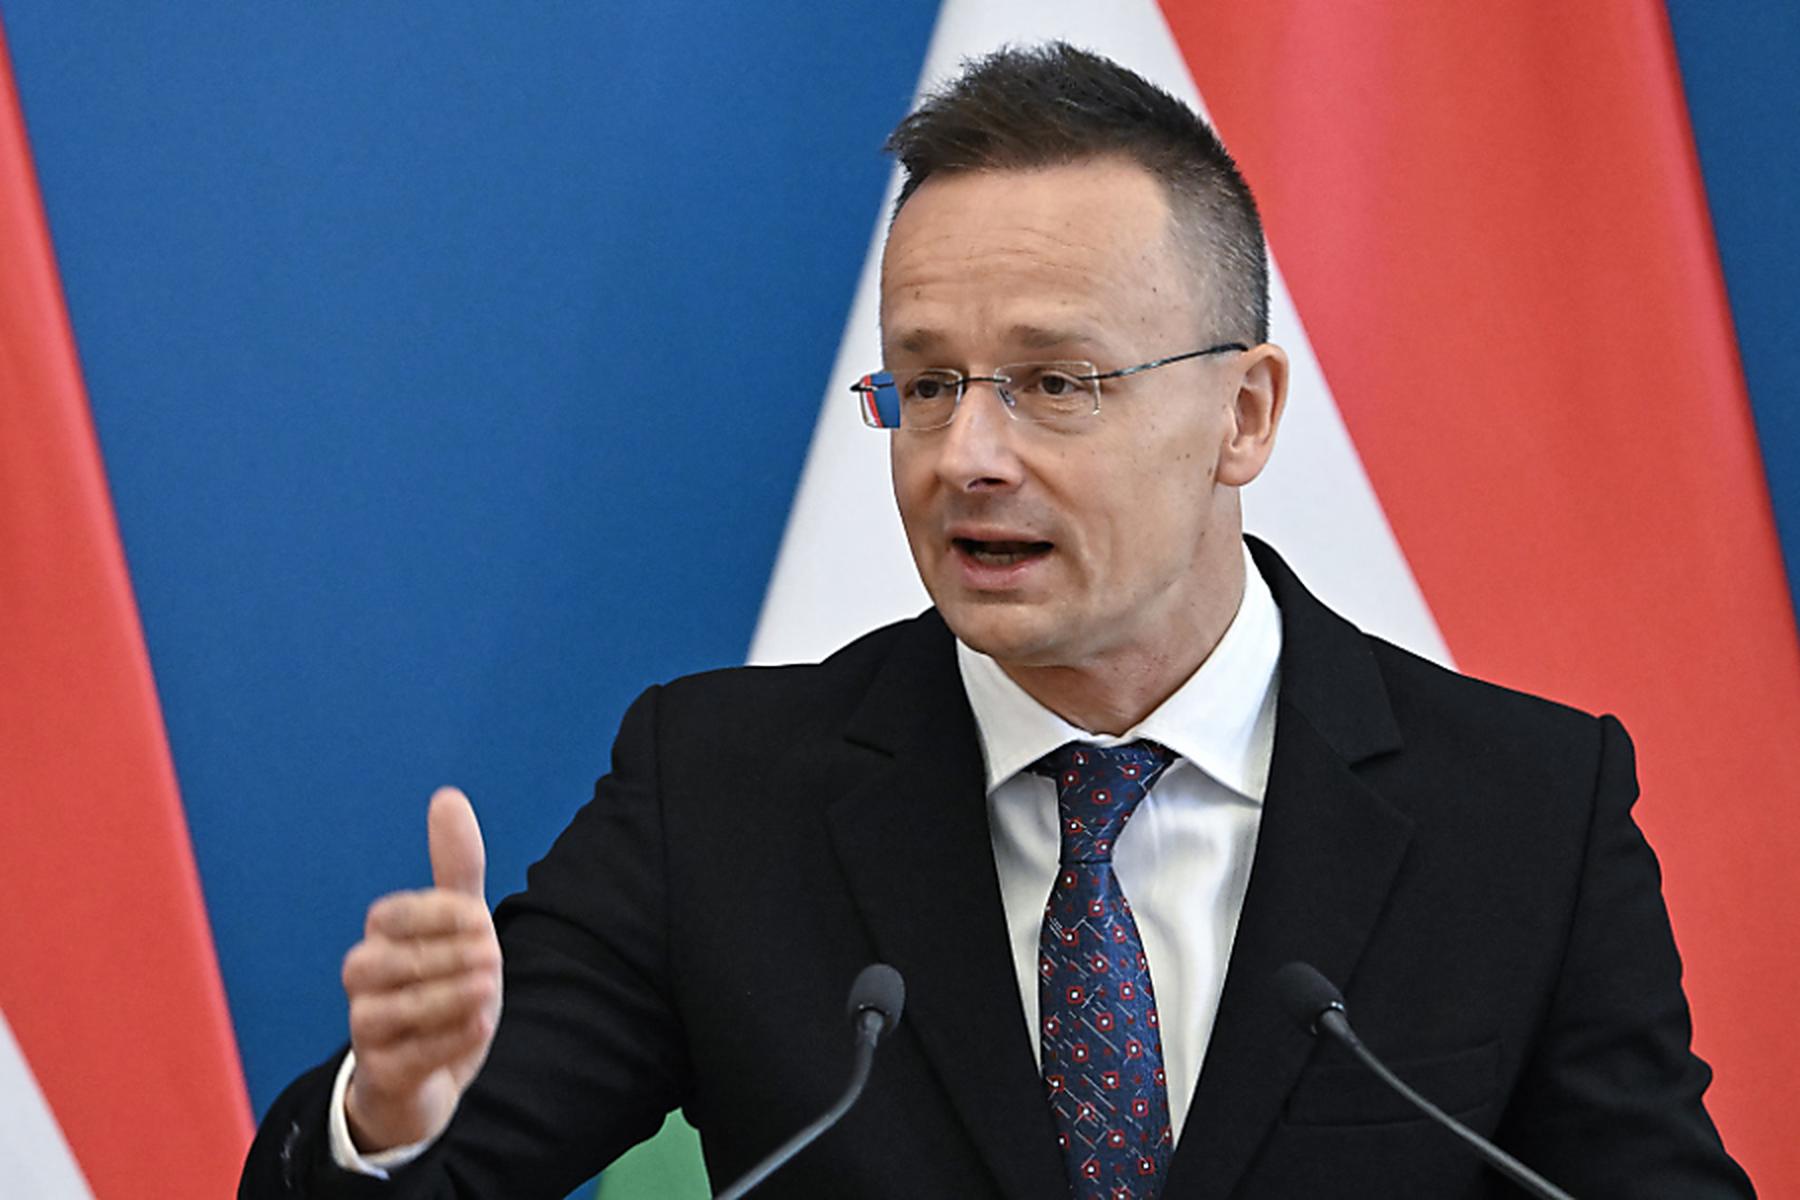 Wien: Ungarn hofft auf engere Kooperation unter FPÖ-Regierung